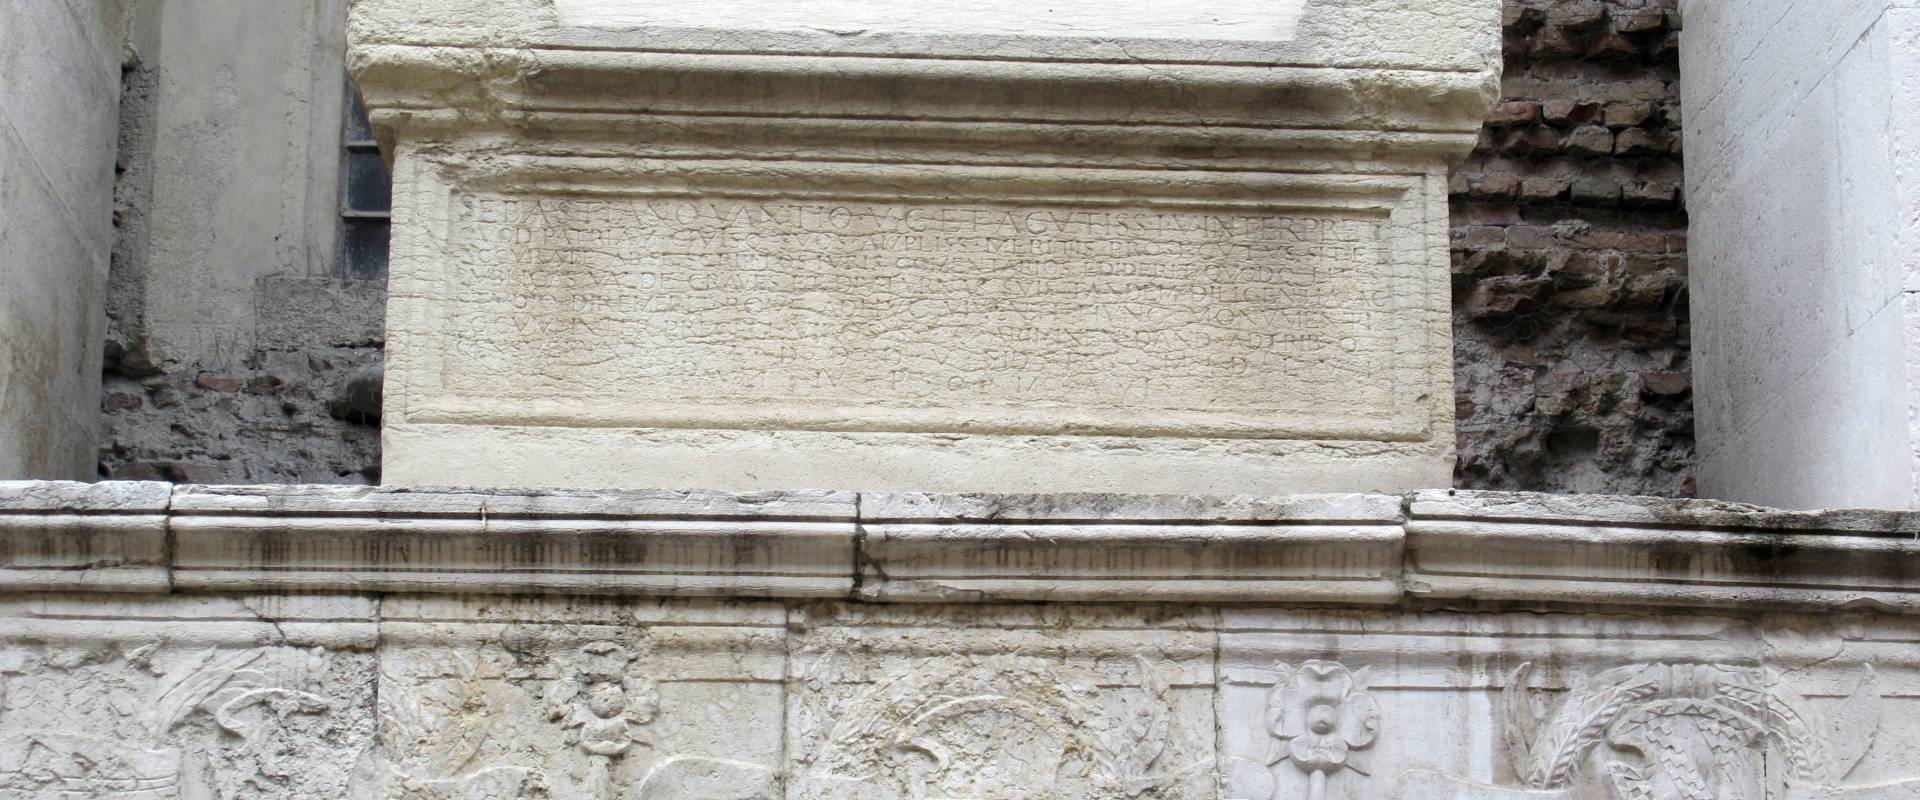 Tempio malatestiano, ri, fianco dx, tomba 06 foto di Sailko